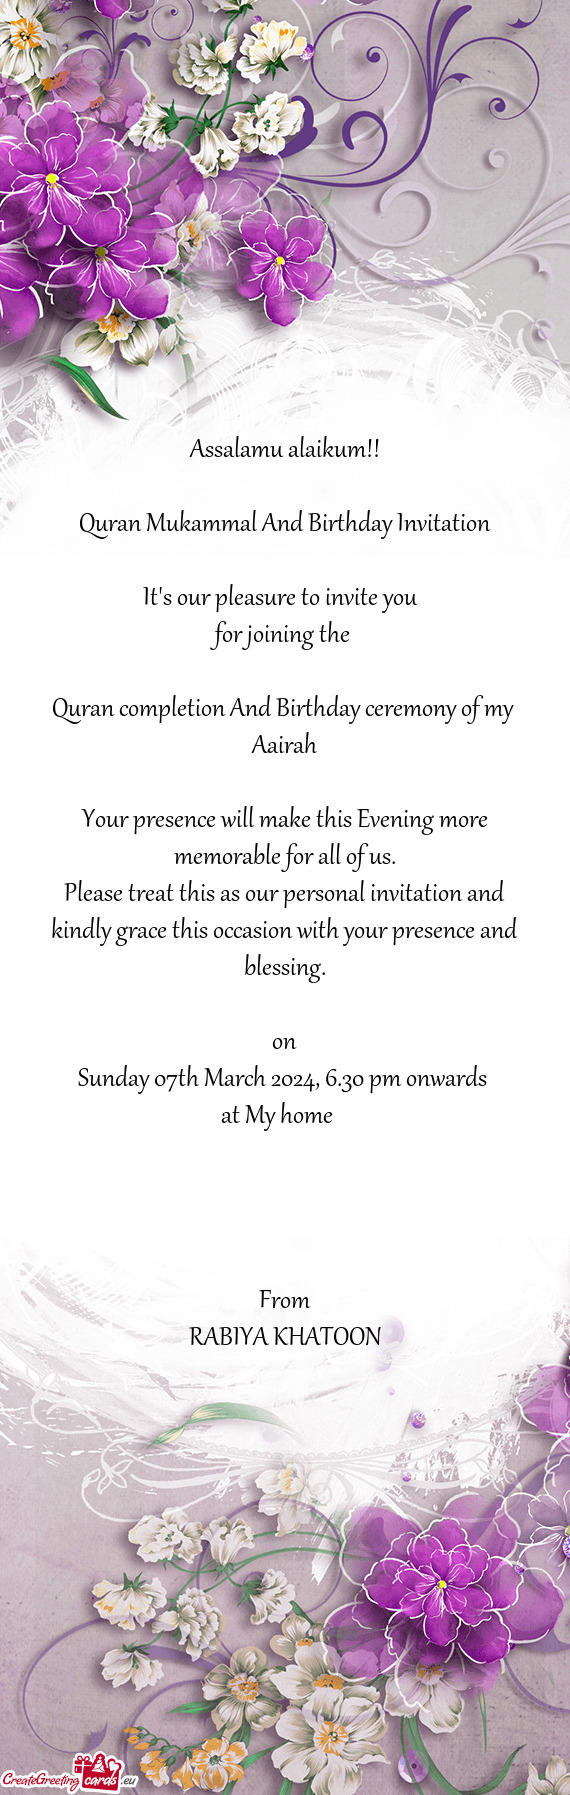 Quran Mukammal And Birthday Invitation